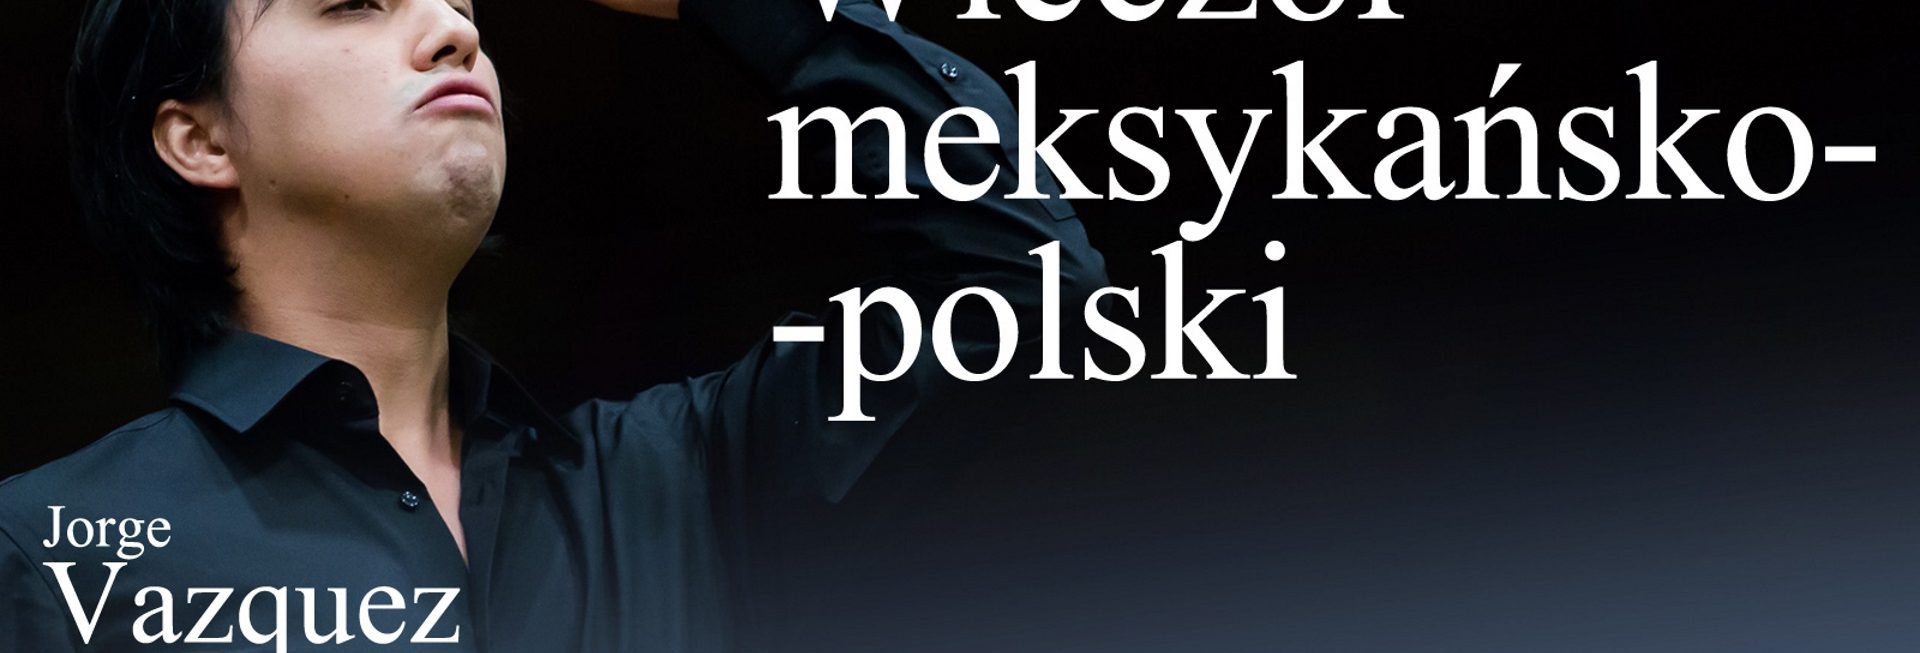 Plakat graficzny zapraszający do Olsztyna na koncert symfoniczny "Wieczór meksykańsko-polski" w Filharmonii Olsztyn.